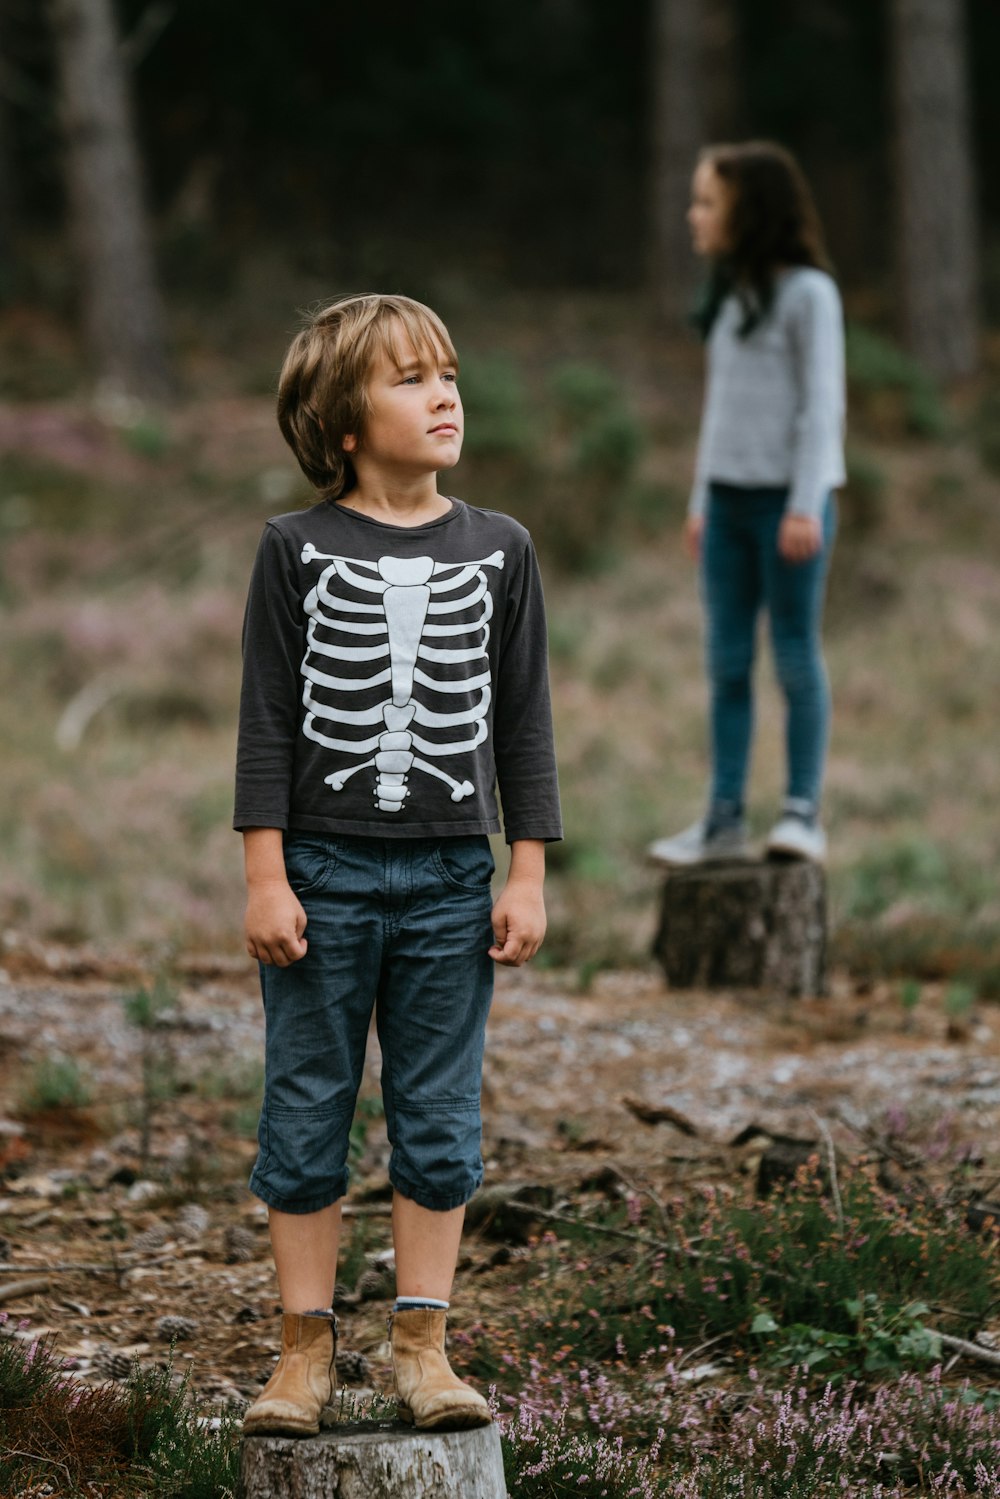 Junge trägt schwarz-weißes Sweatshirt mit Rundhalsausschnitt und Skelettdruck, während er auf einem Baumstamm steht